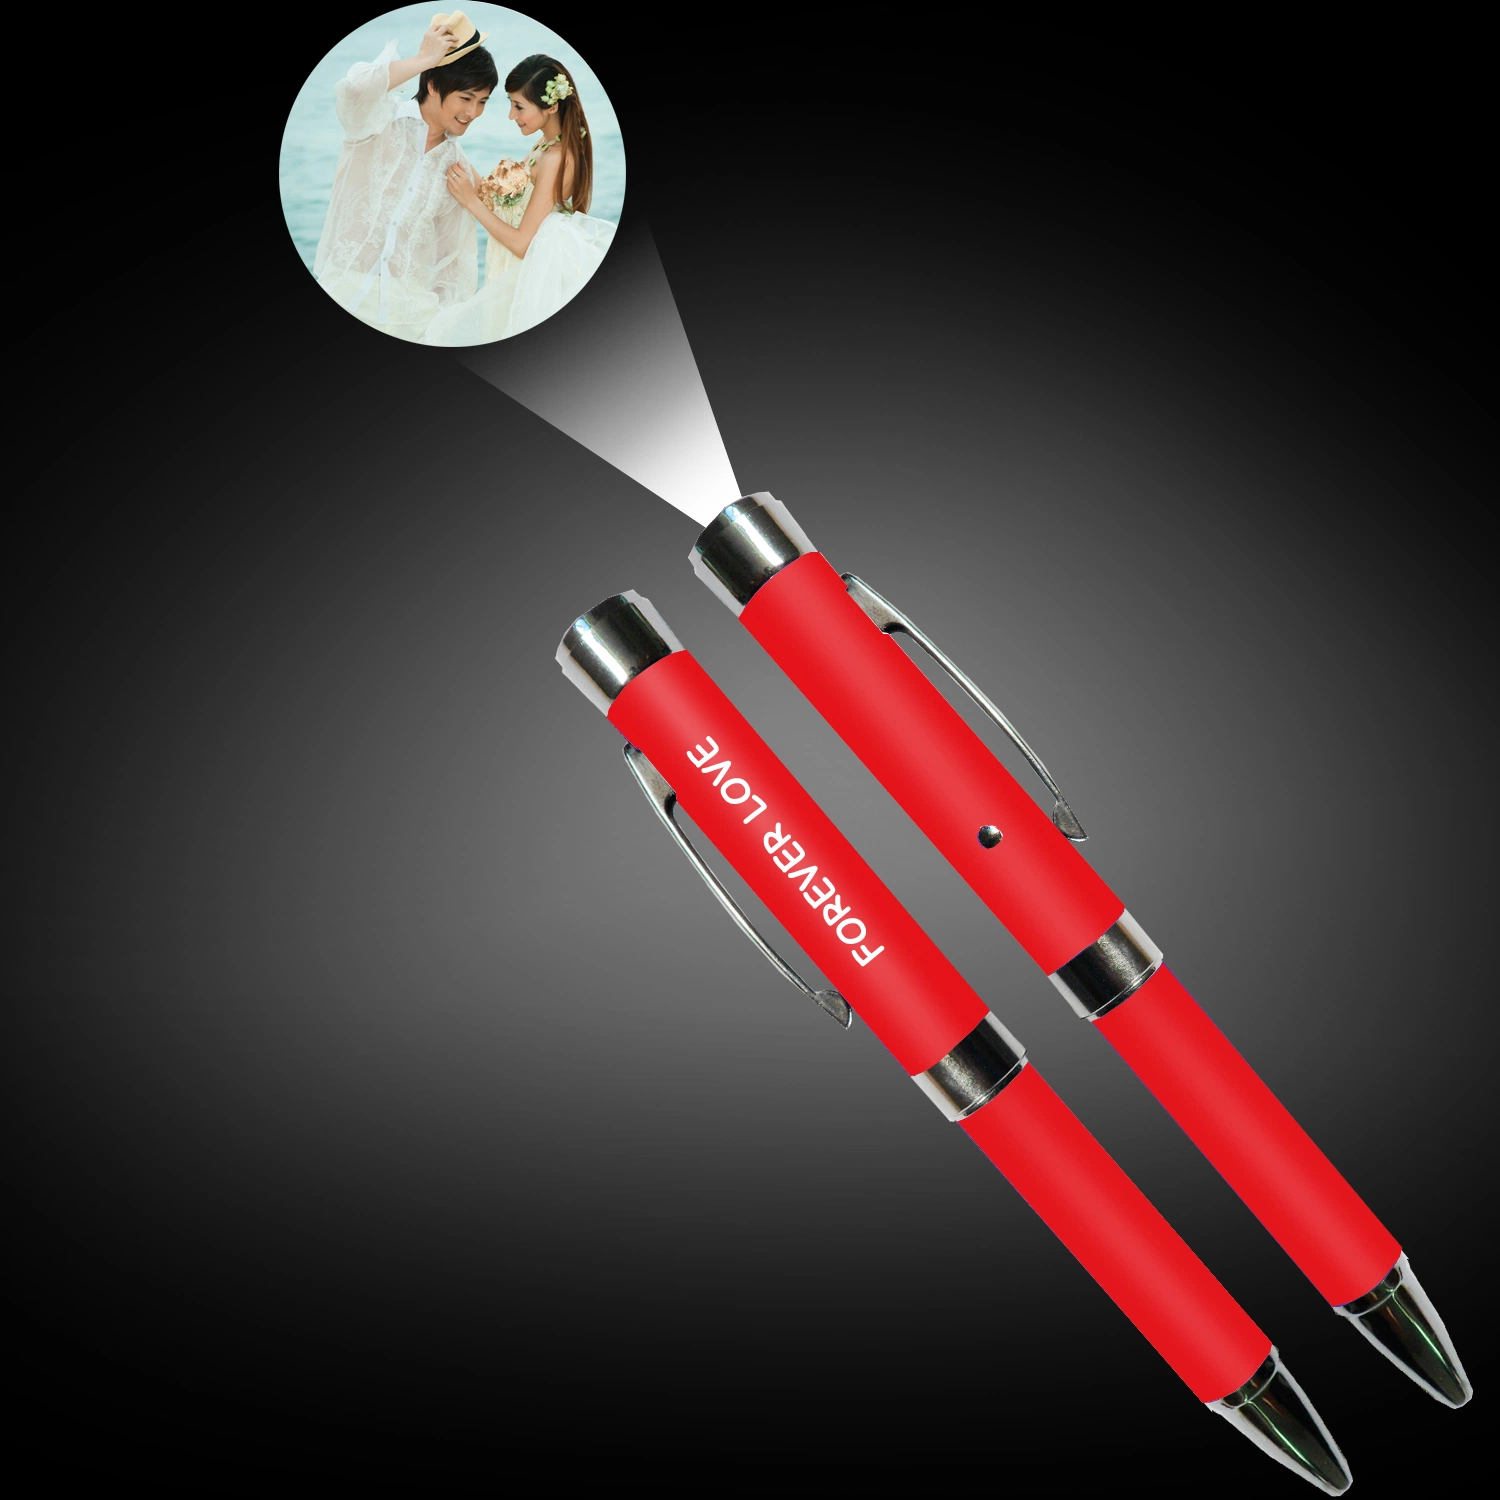 Projecteur LED stylo à bille électronique personnalisé Stylo pour cadeaux de mariage papeterie personnelle cadeau